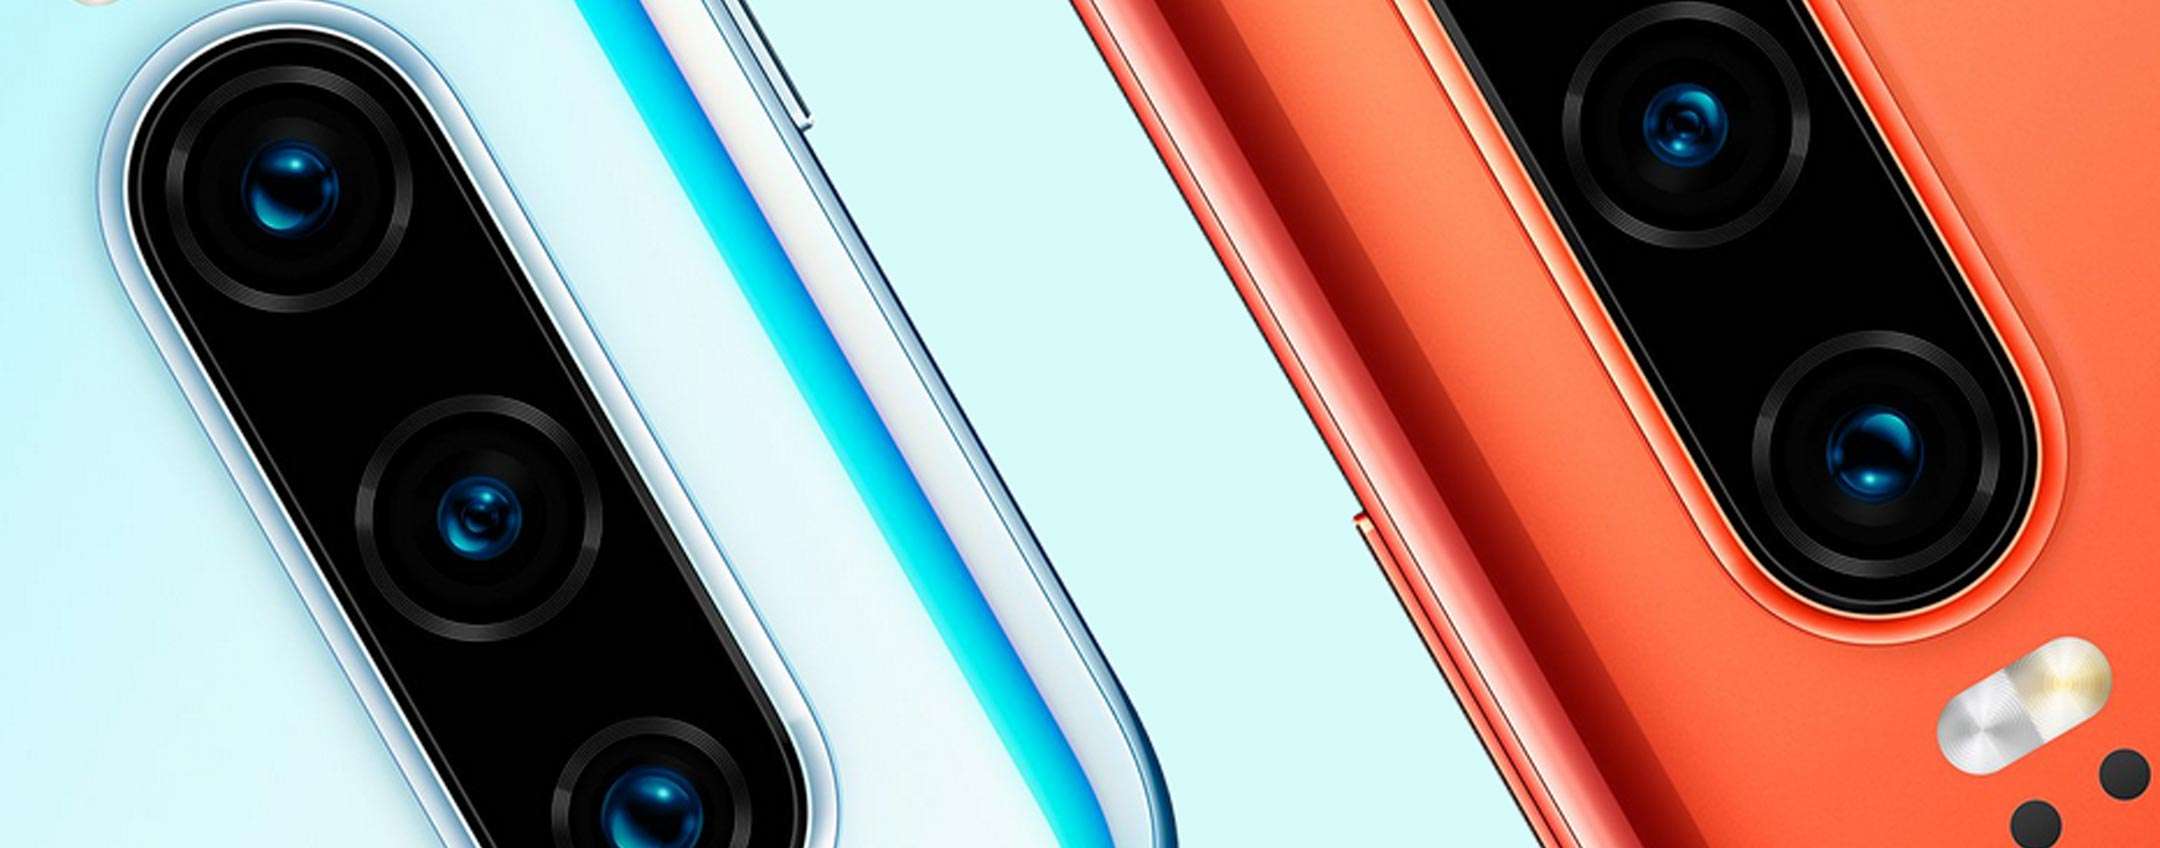 Huawei P30 si aggiorna: tutte le novità per l'iconico device